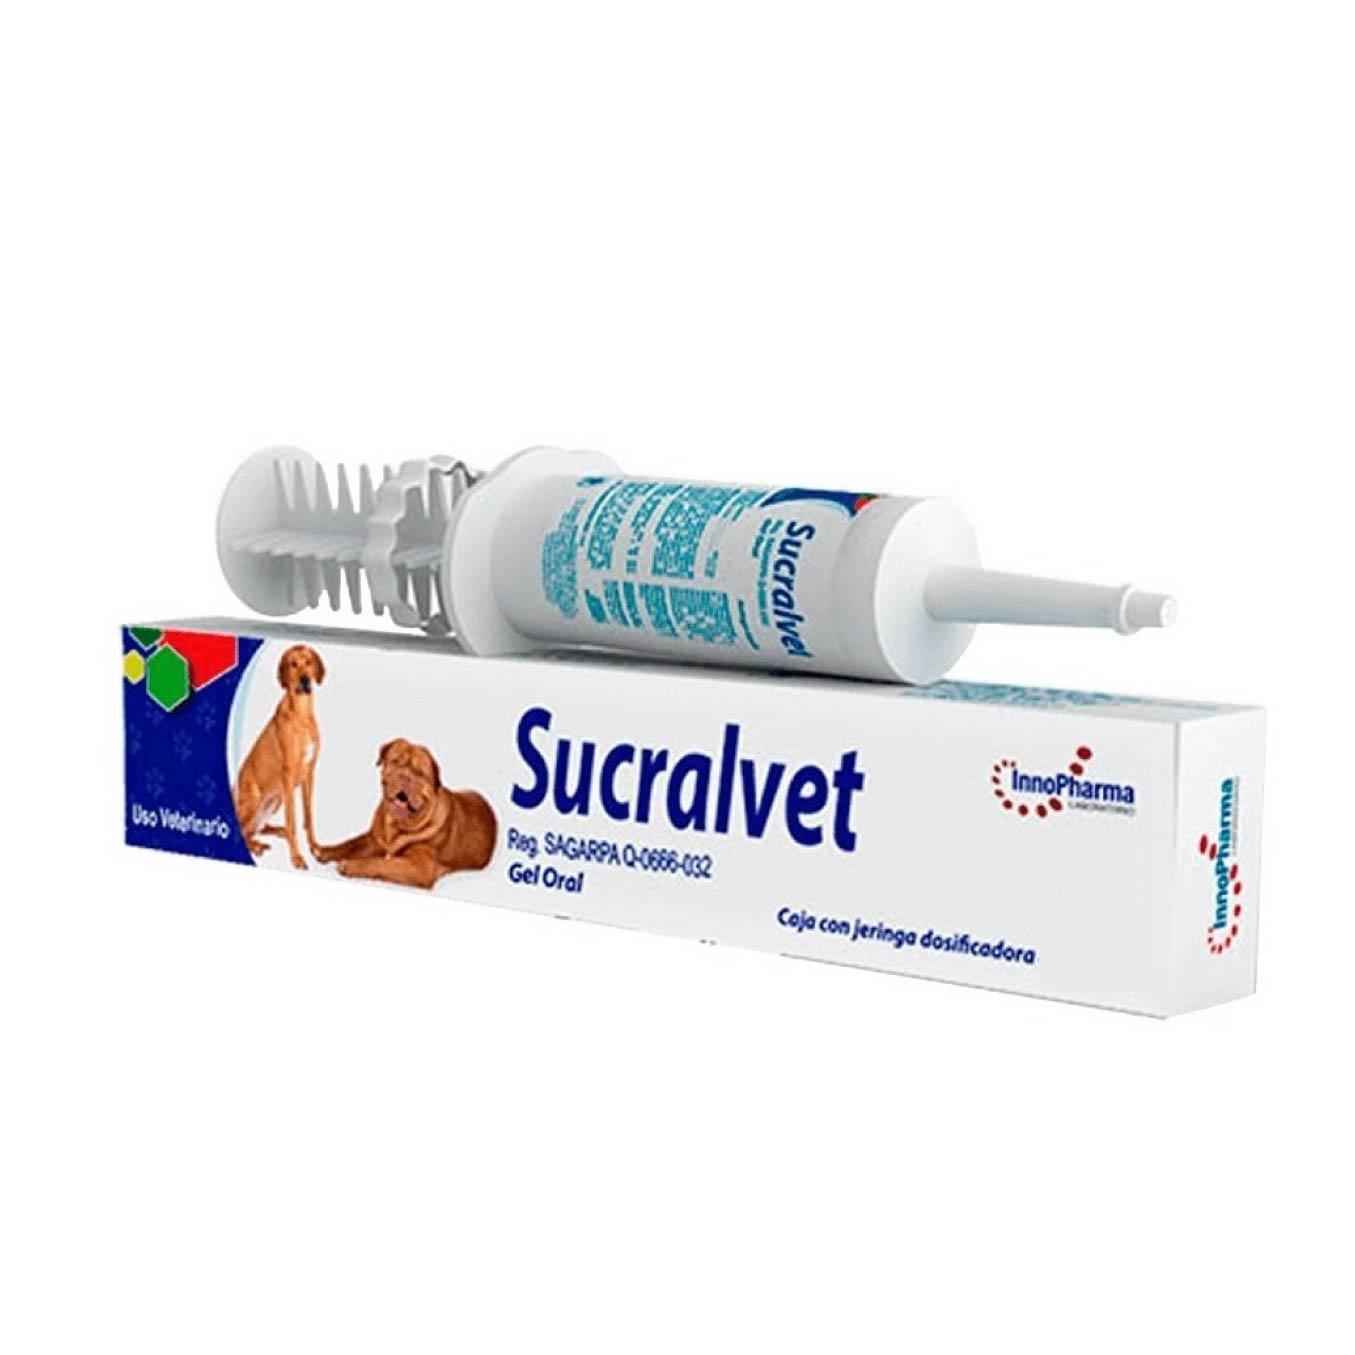 Sucralvet  Sucralfato Antiulceroso  Gel Oral - InnoPharma, Farmacia, InnoPharma, Mister Mascotas